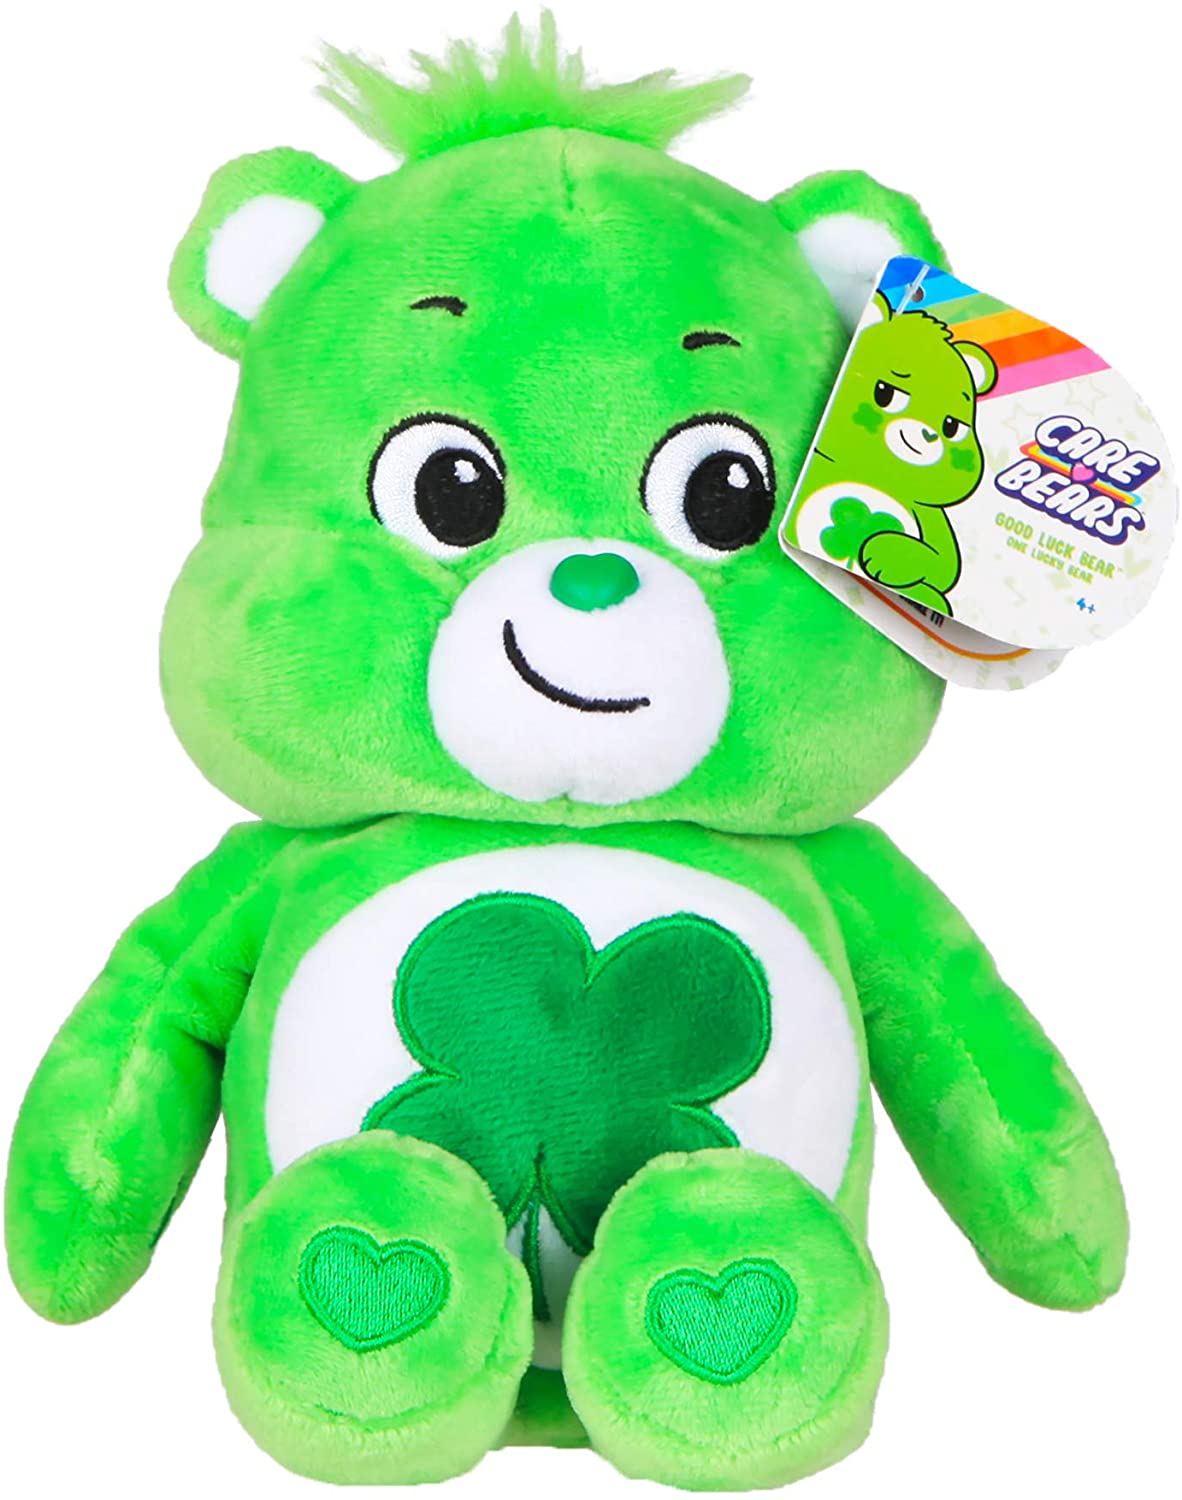 Care Bear Good Luck Bear 22cm Soft Toy